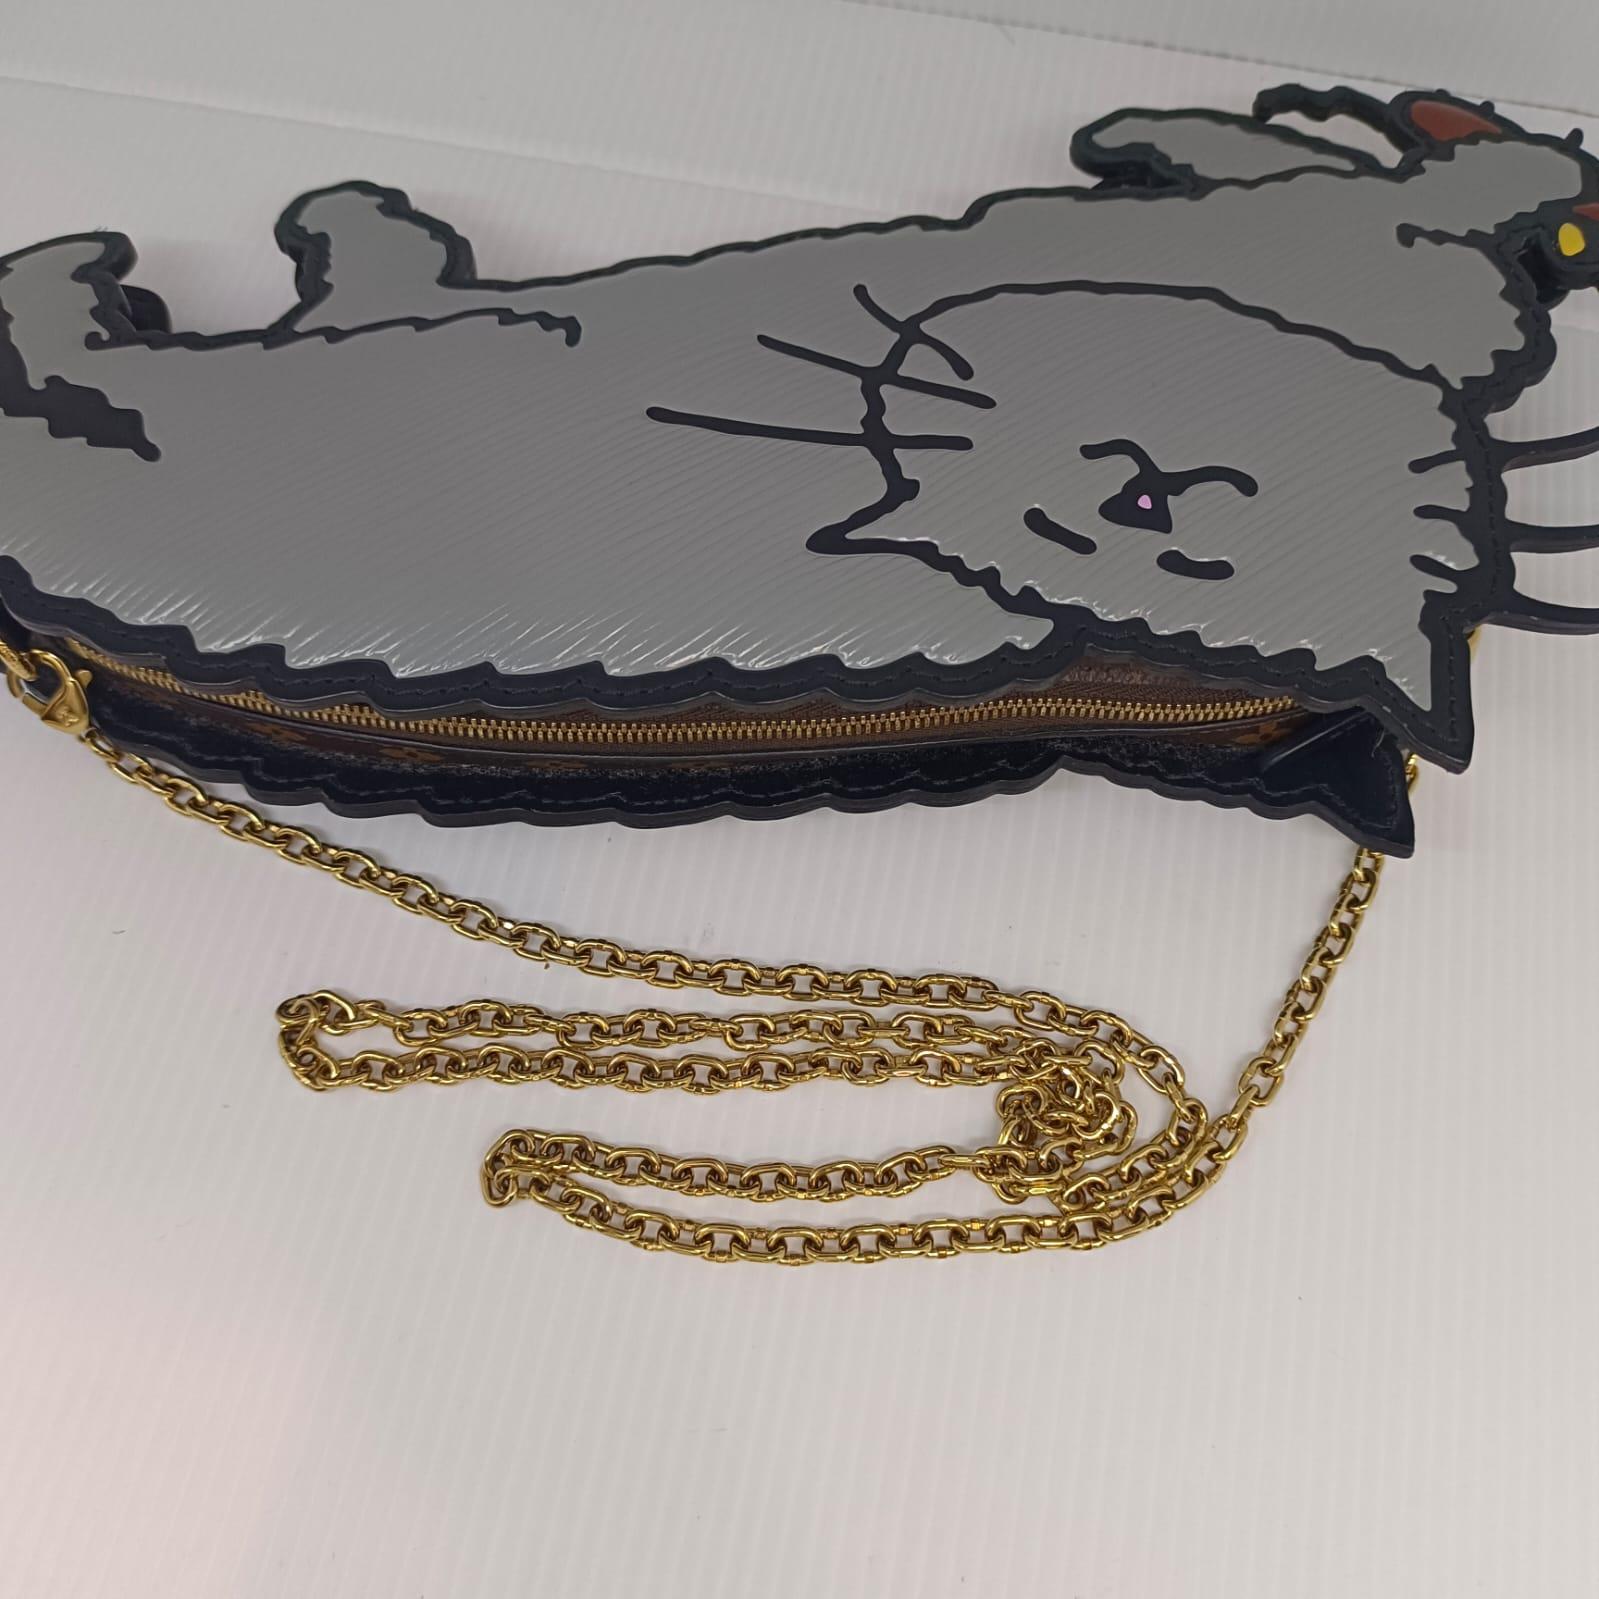 Rara colaboración de la colección crucero LV 2018 con Grace Coddington. En excelente estado. Hermosa pieza única. Se entrega con su bolsa guardapolvo y su cadena extraíble.